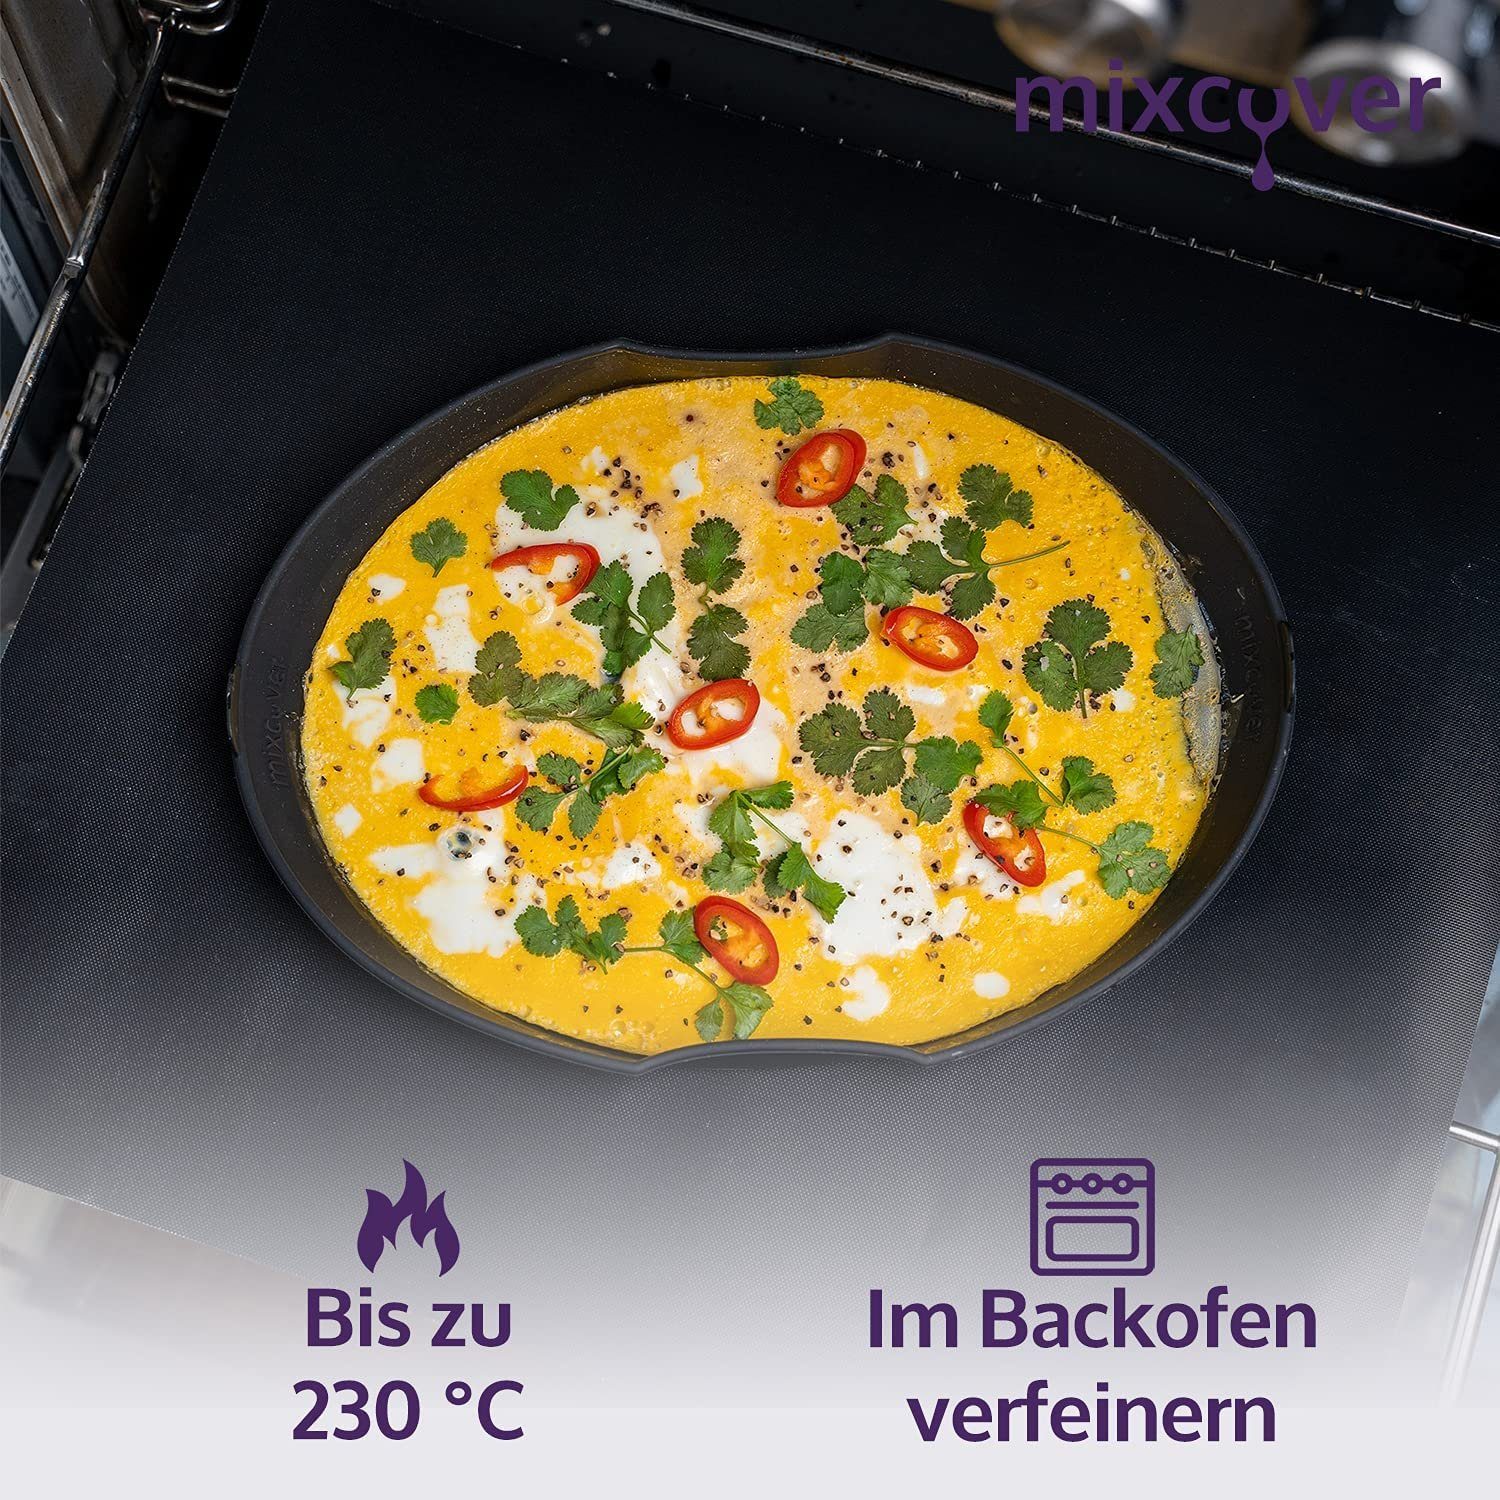 Mixcover Küchenmaschinen-Adapter Dampfgarraum Dampfgarform Cookit Auflaufform mixcover Bosch Silikonform für